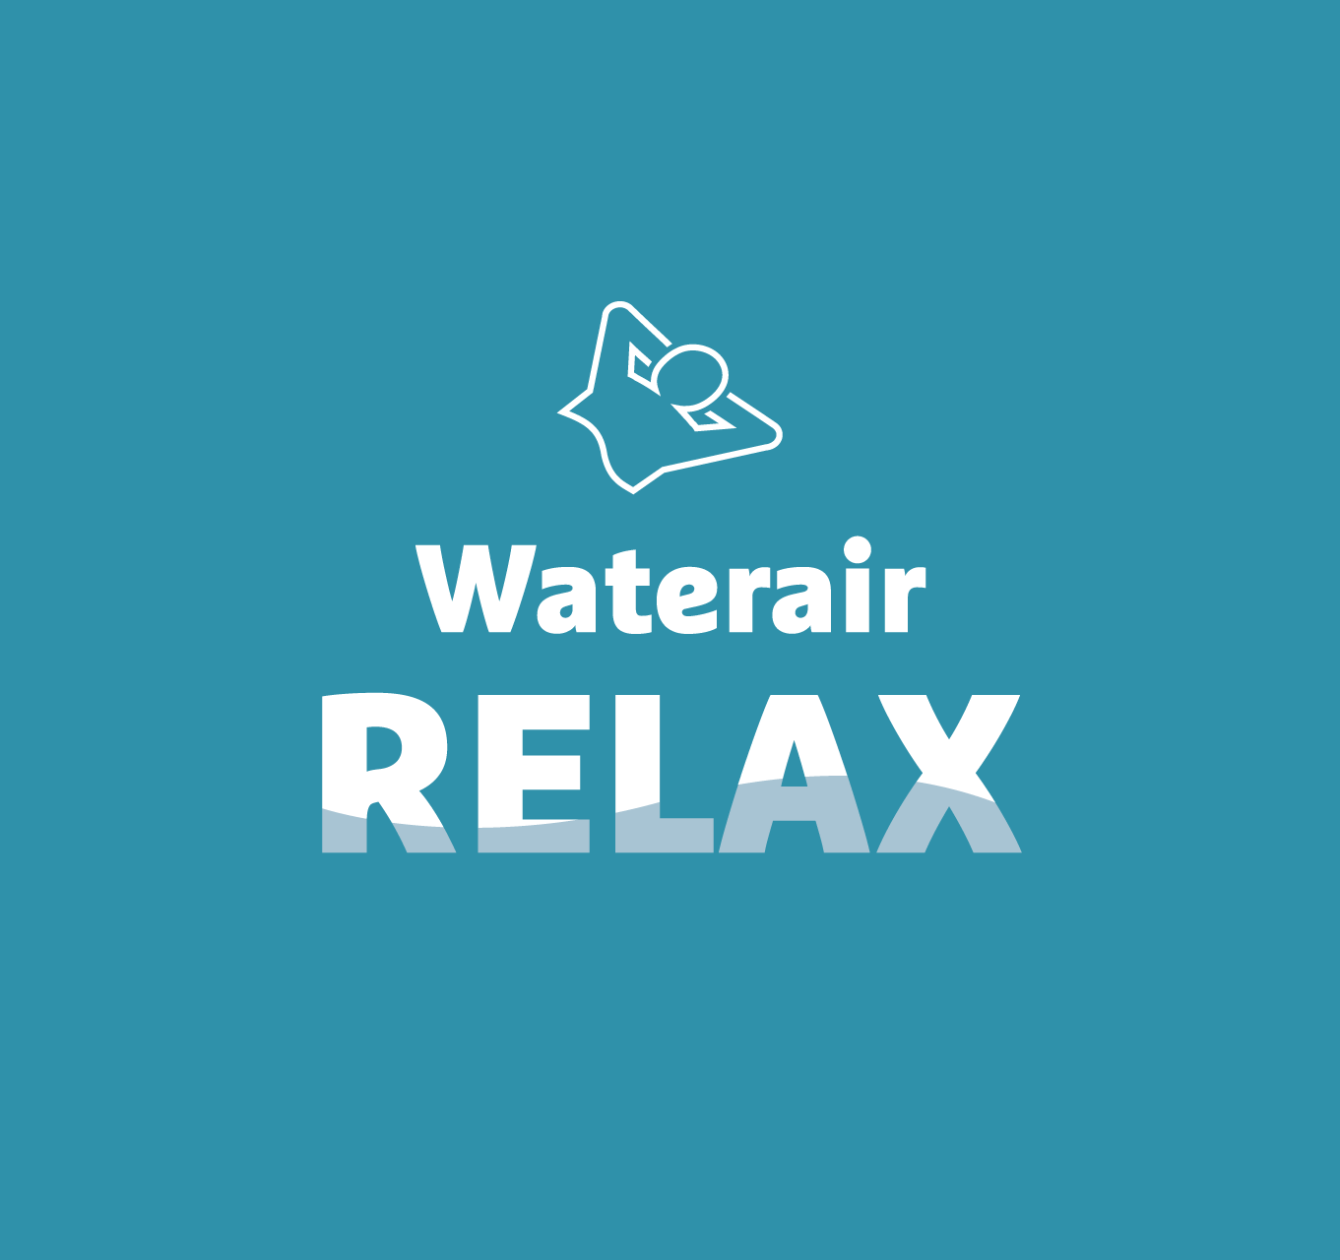 Waterair Relax: su piscina fácil de usar